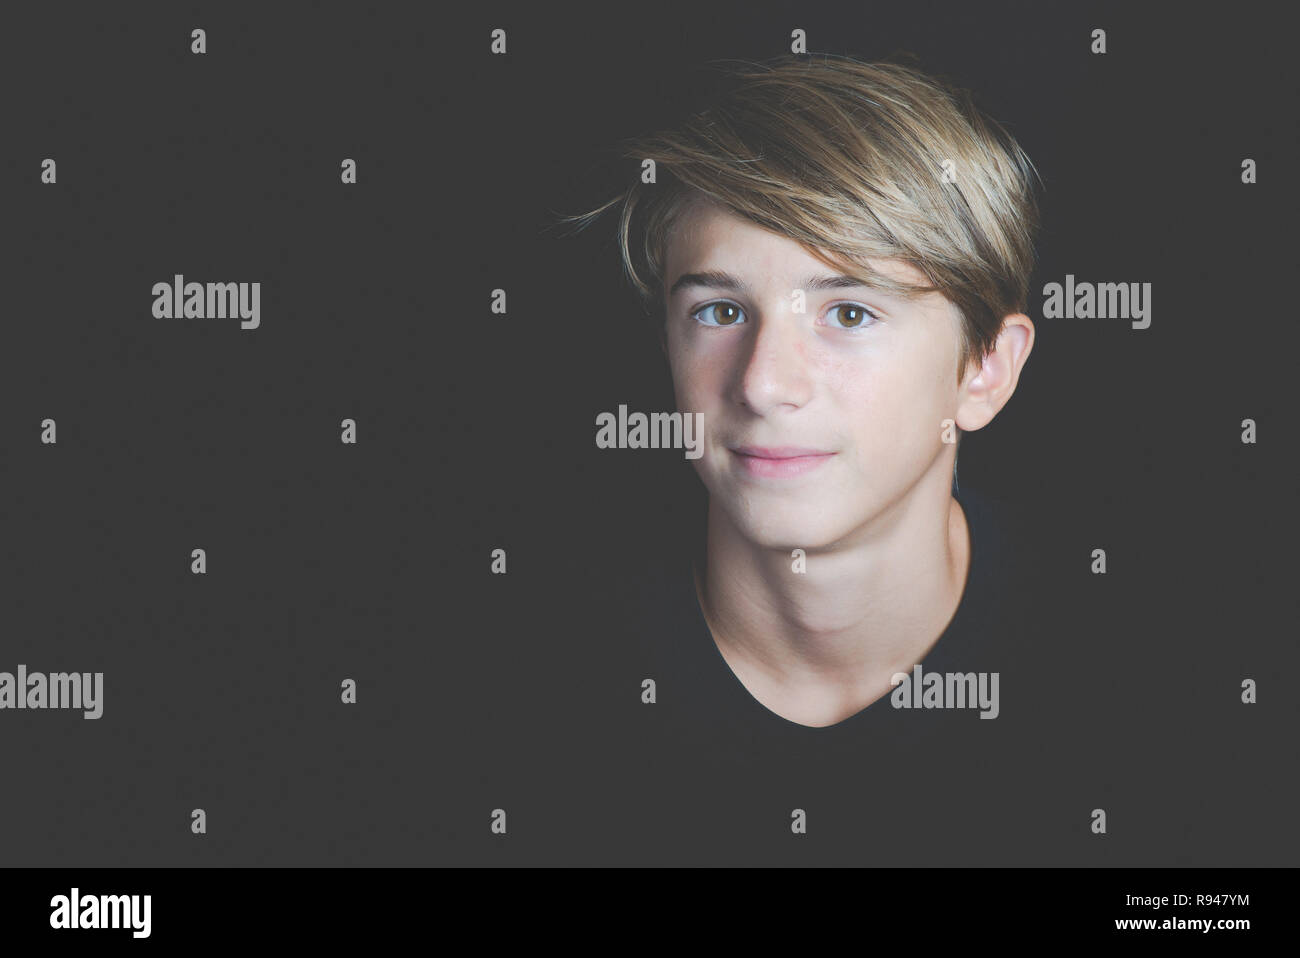 Junge lächelnde junge Portrait auf schwarzem Hintergrund - Begriff der Adoleszenz ohne Probleme Stockfoto